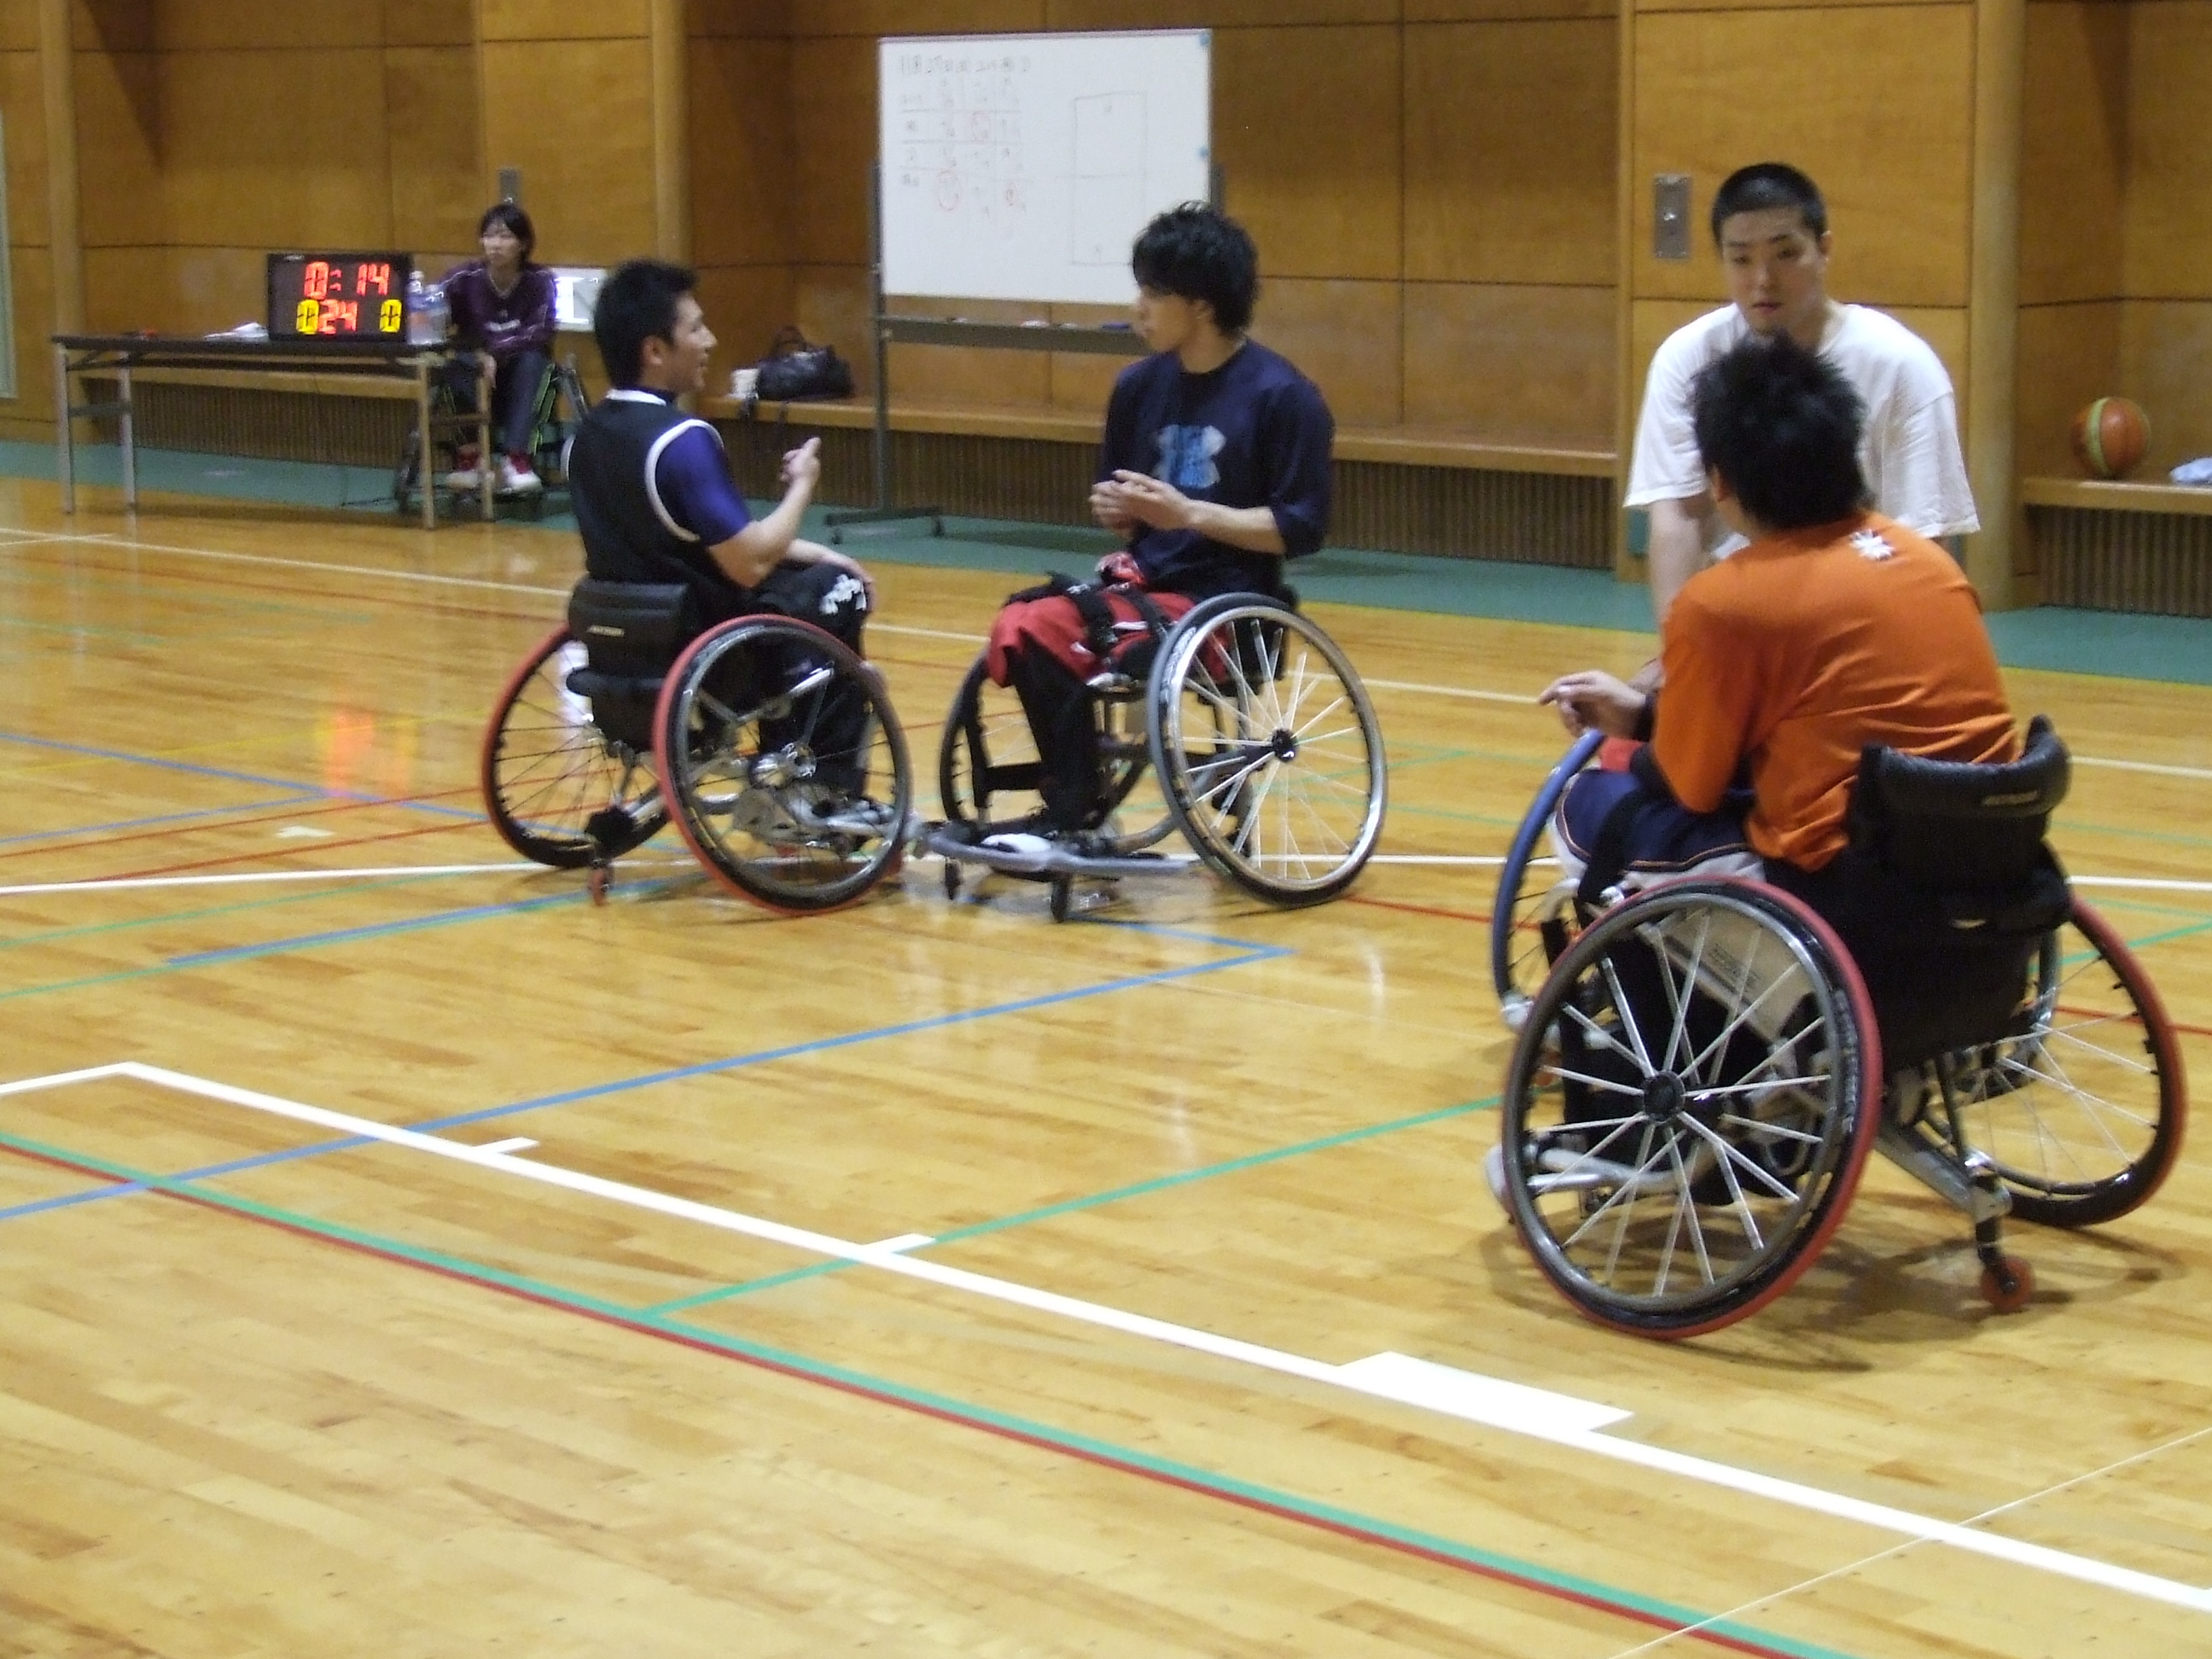 kurumaisubasukextutoboru sensyuikusei - 車椅子バスケットボール選手育成教室